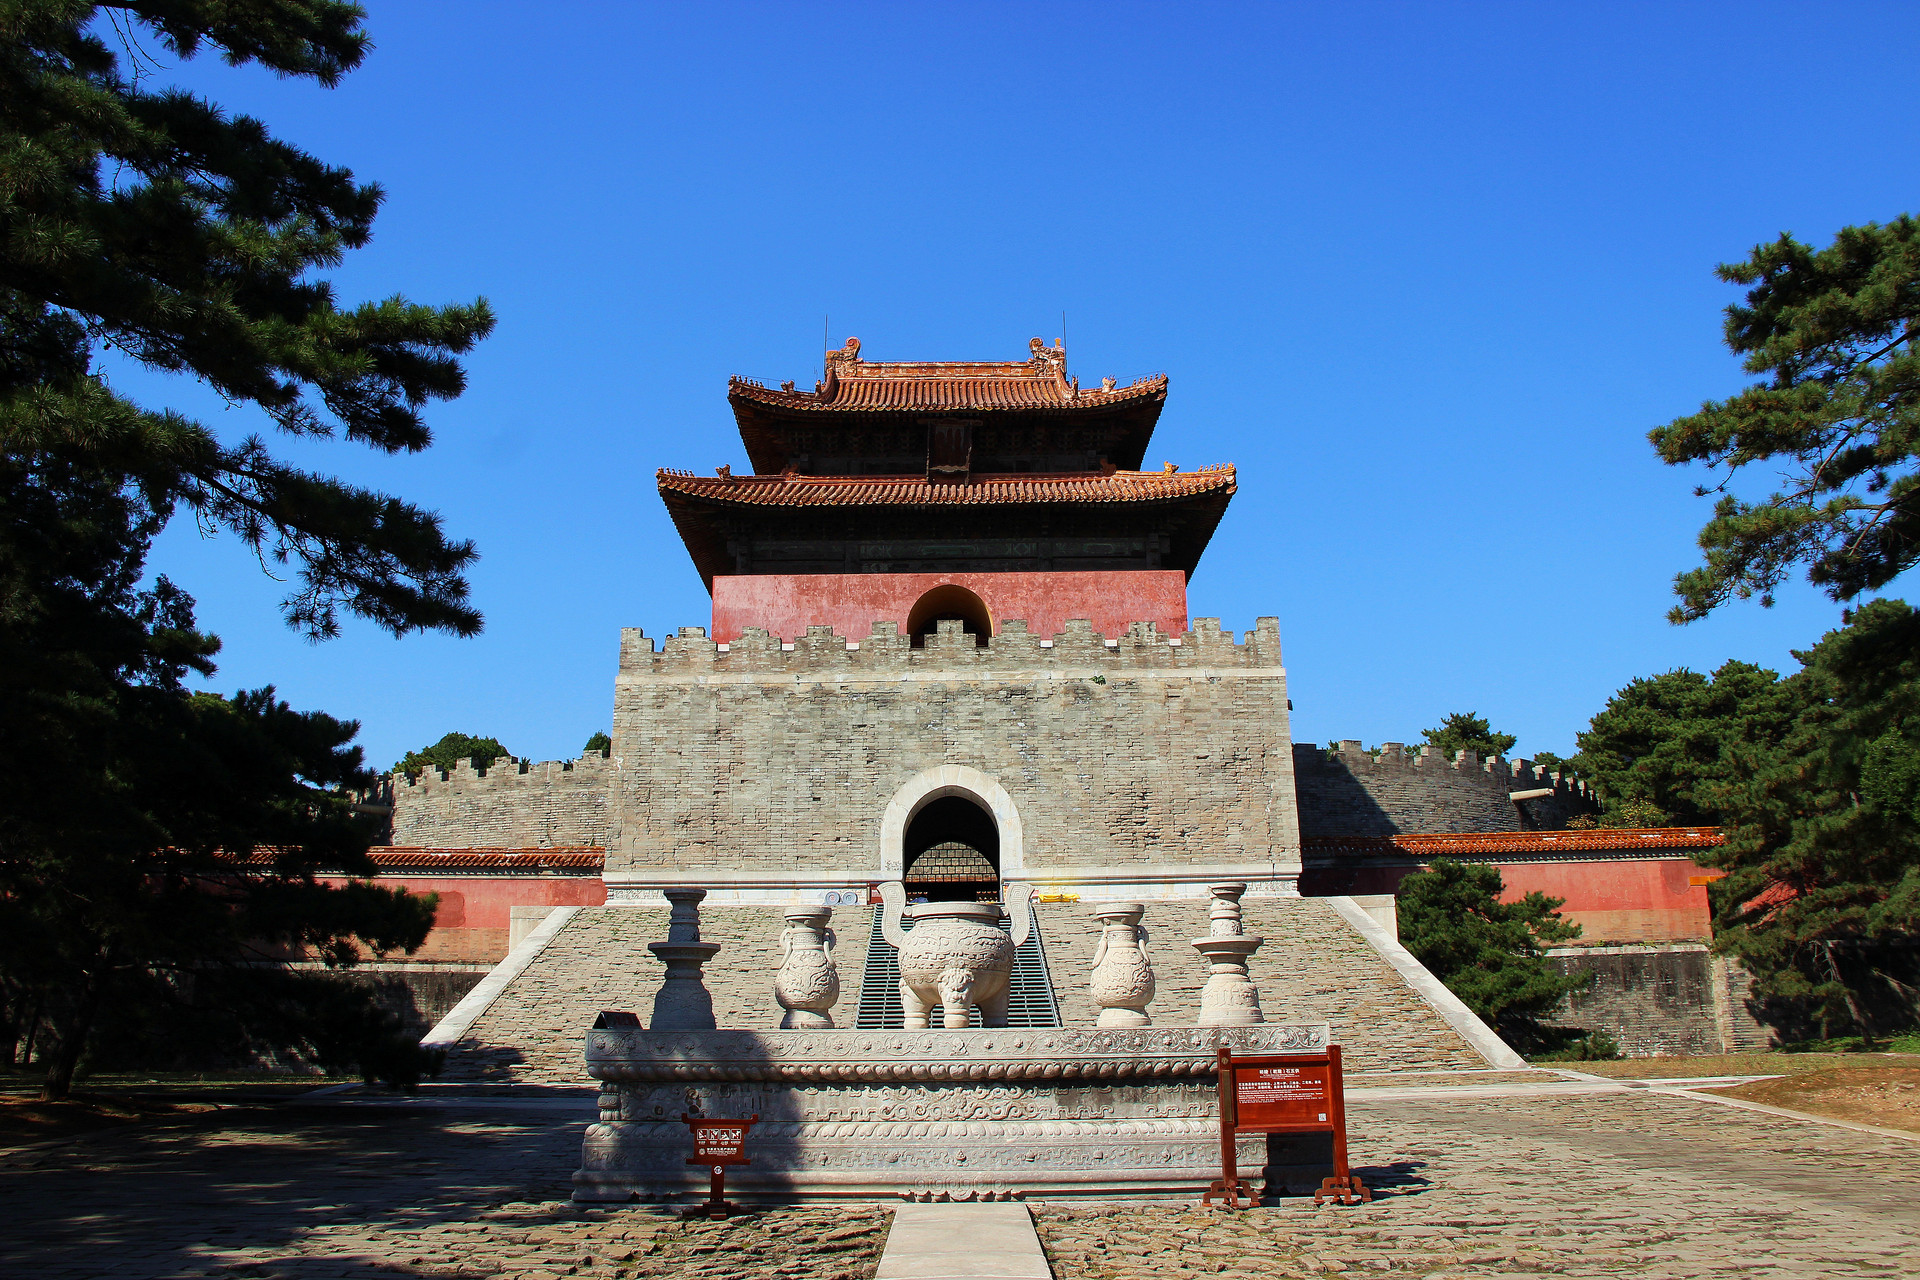 原创我国清朝的帝王陵陆续修建247年成了世界文化遗产